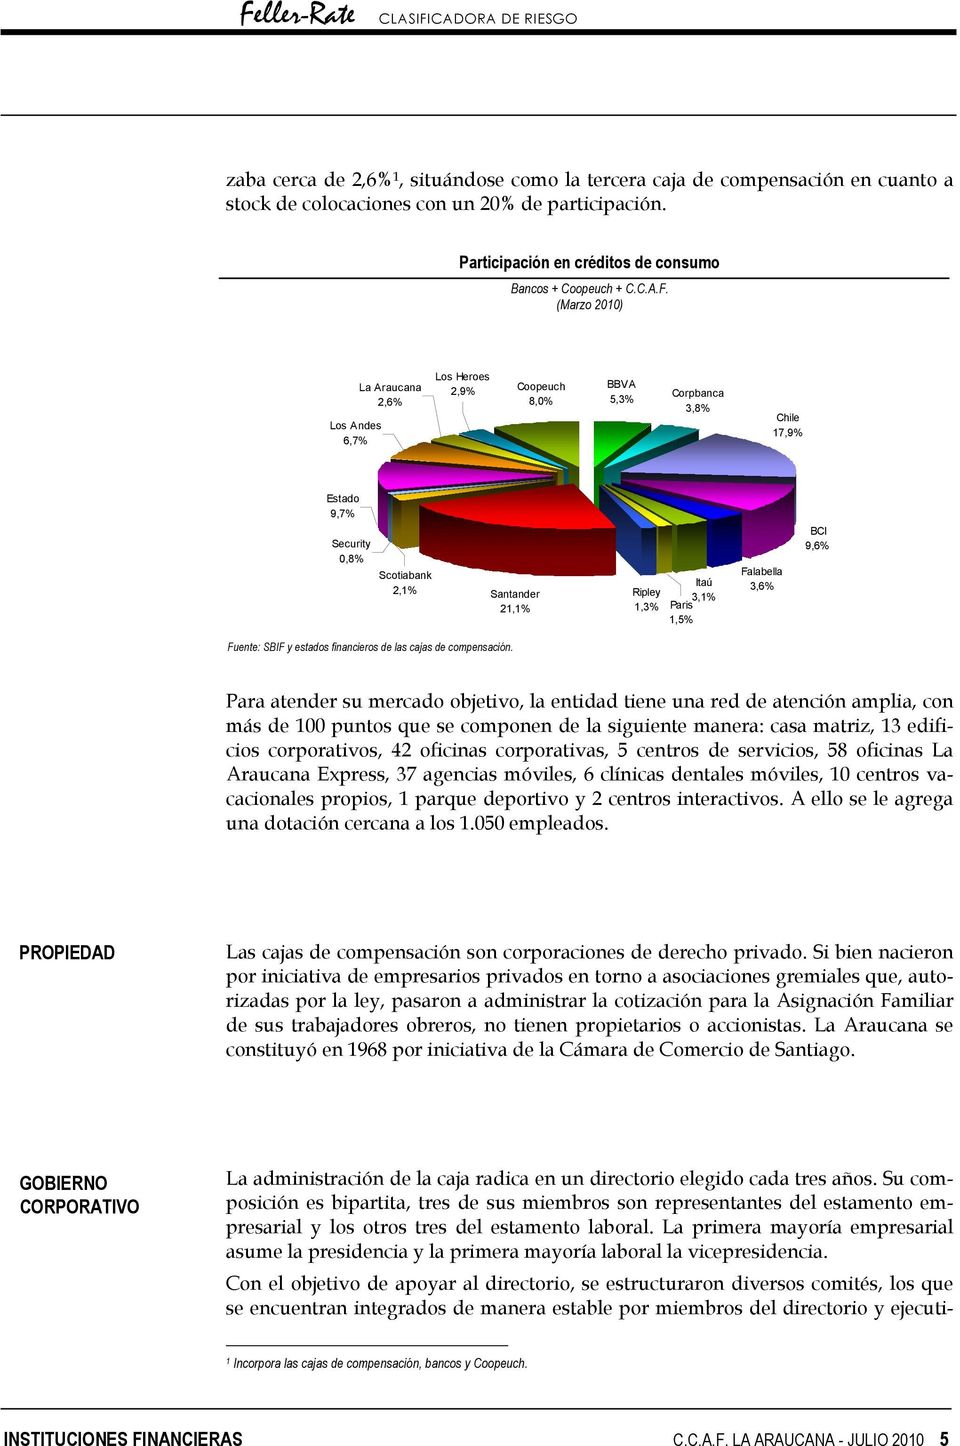 1,5% Falabella 3,6% BCI 9,6% Fuente: SBIF y estados financieros de las cajas de compensación.